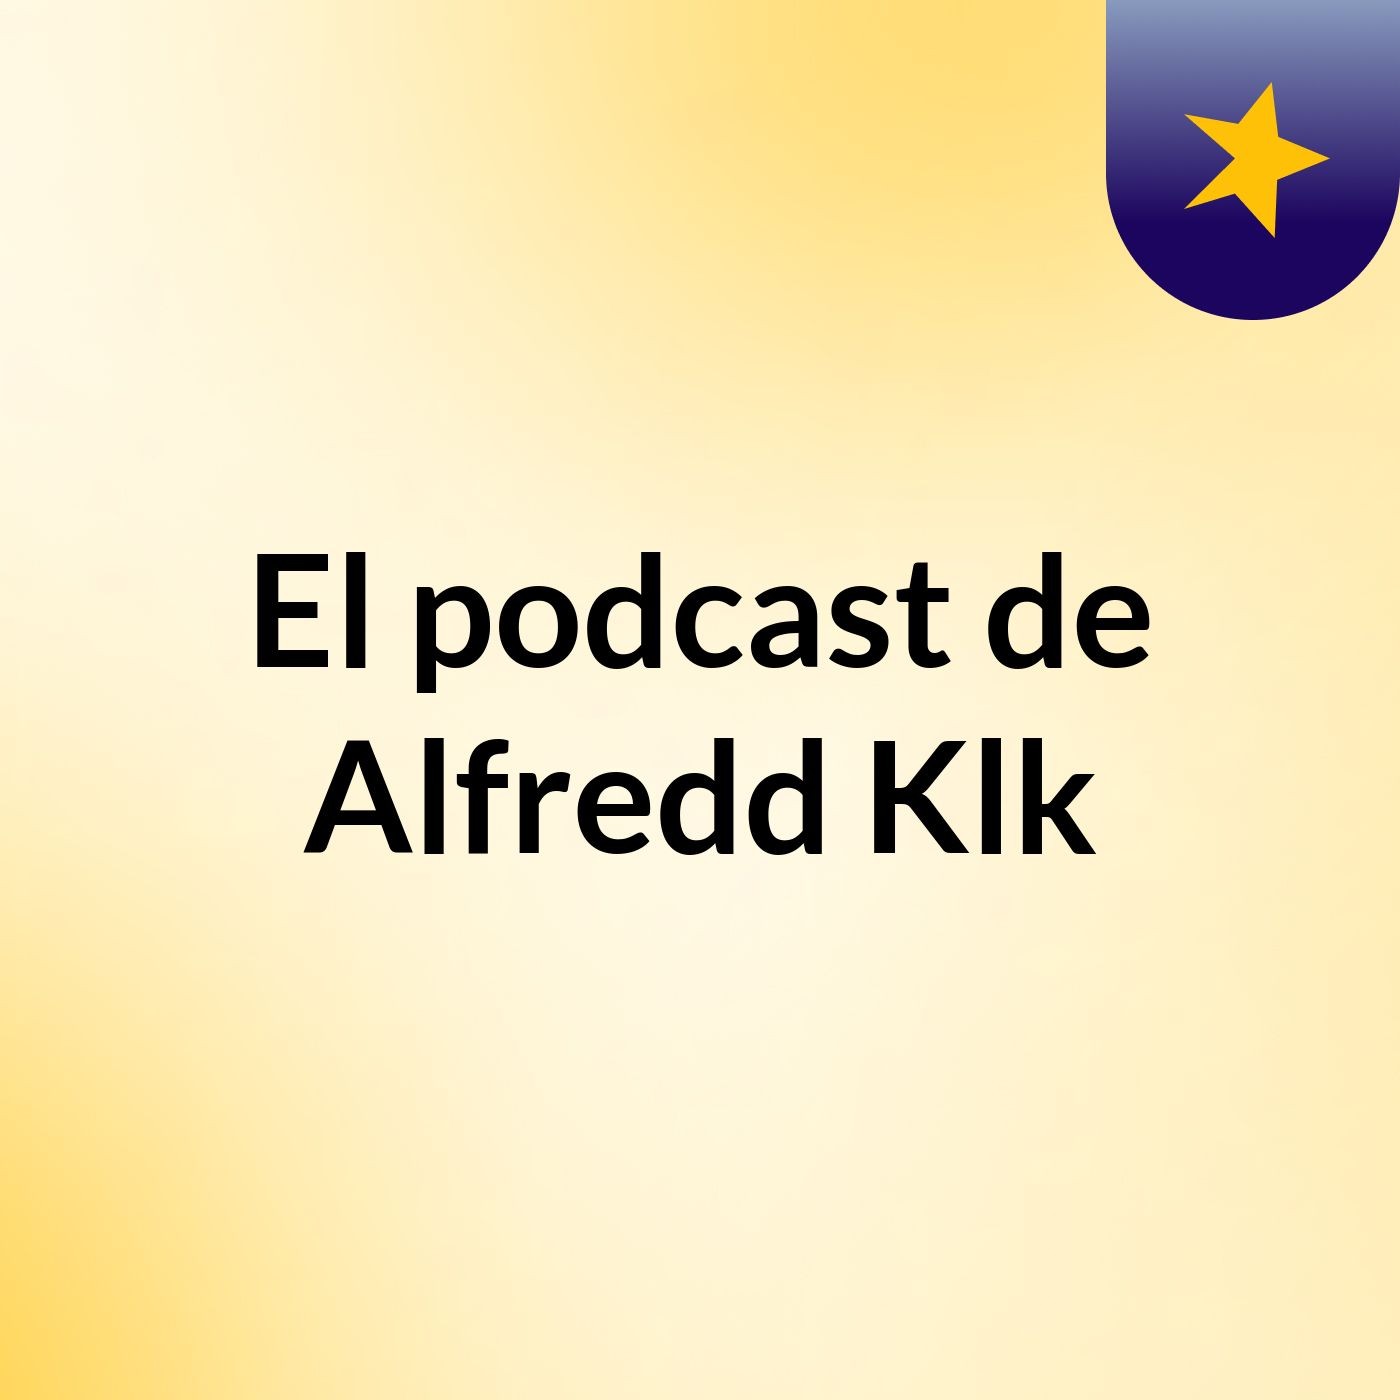 Episodio 5 - El podcast de Alfredd Klk